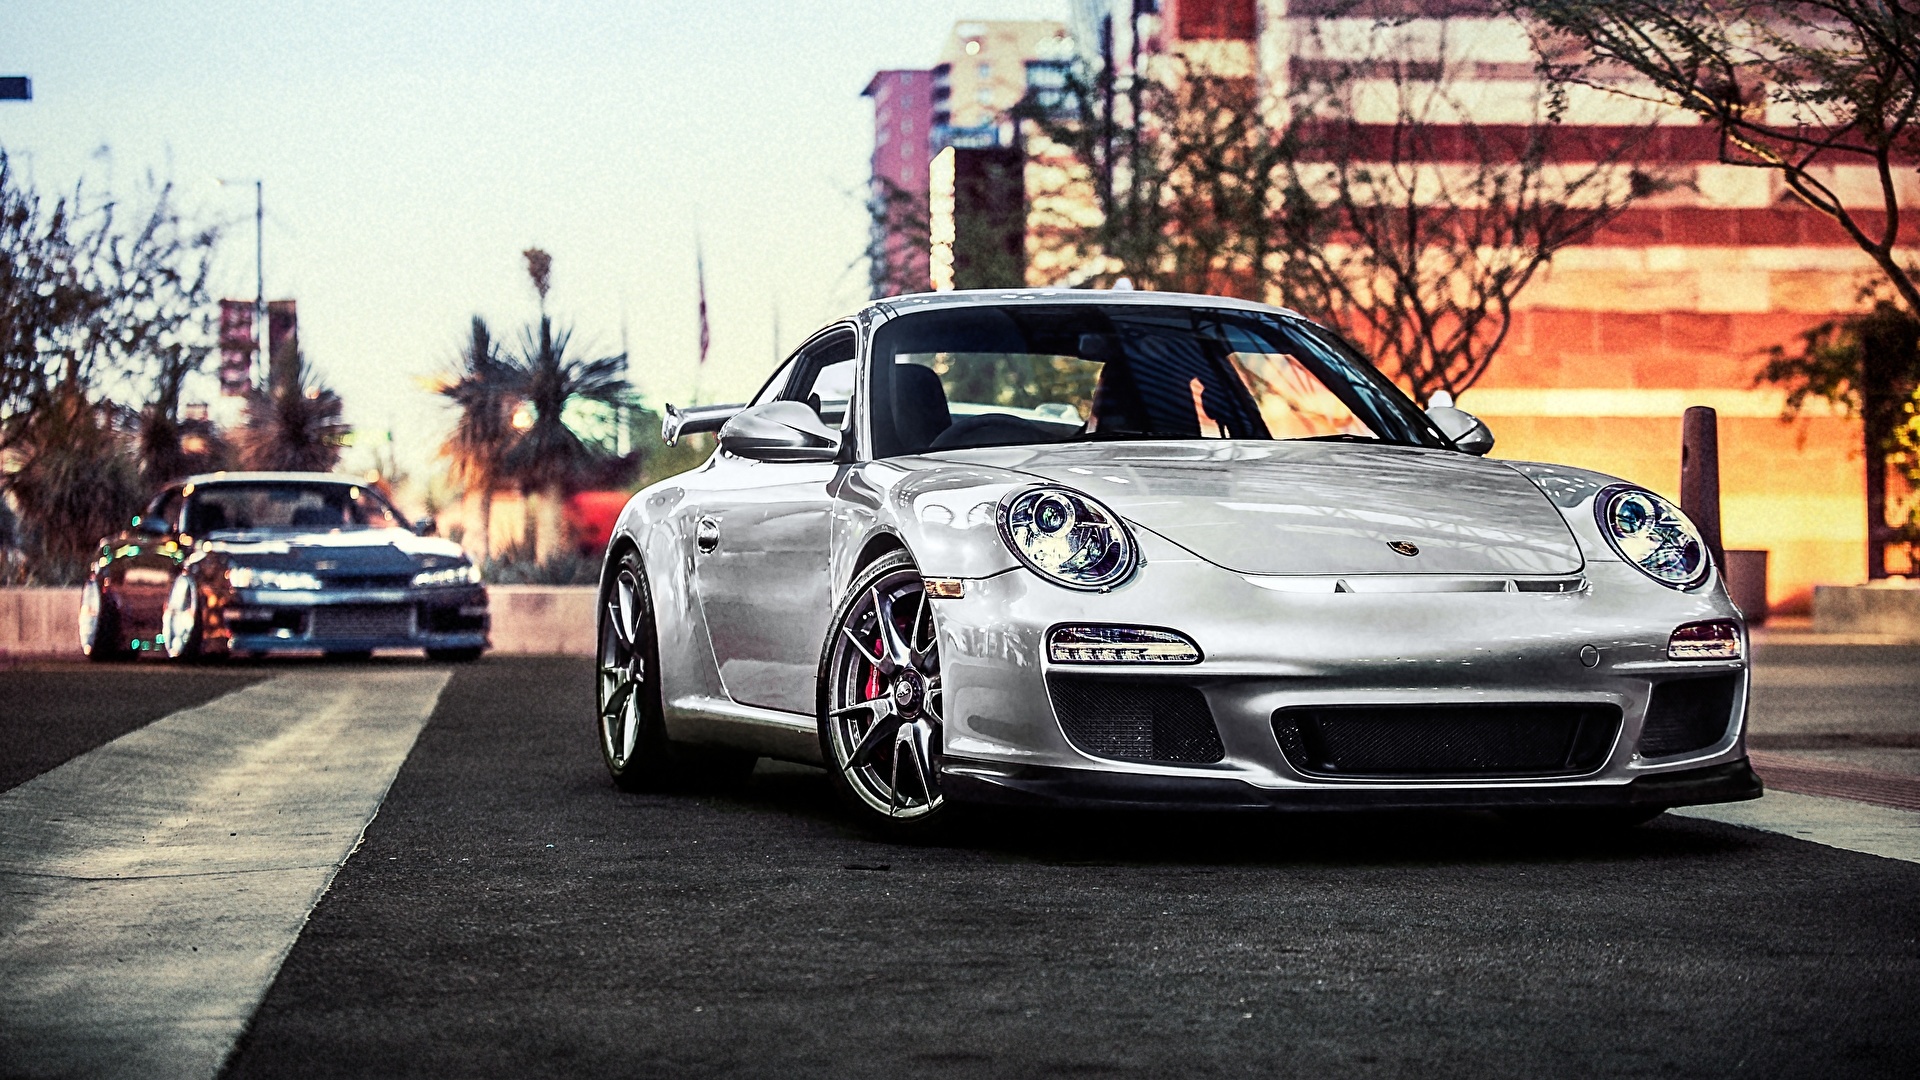 Porsche background picture